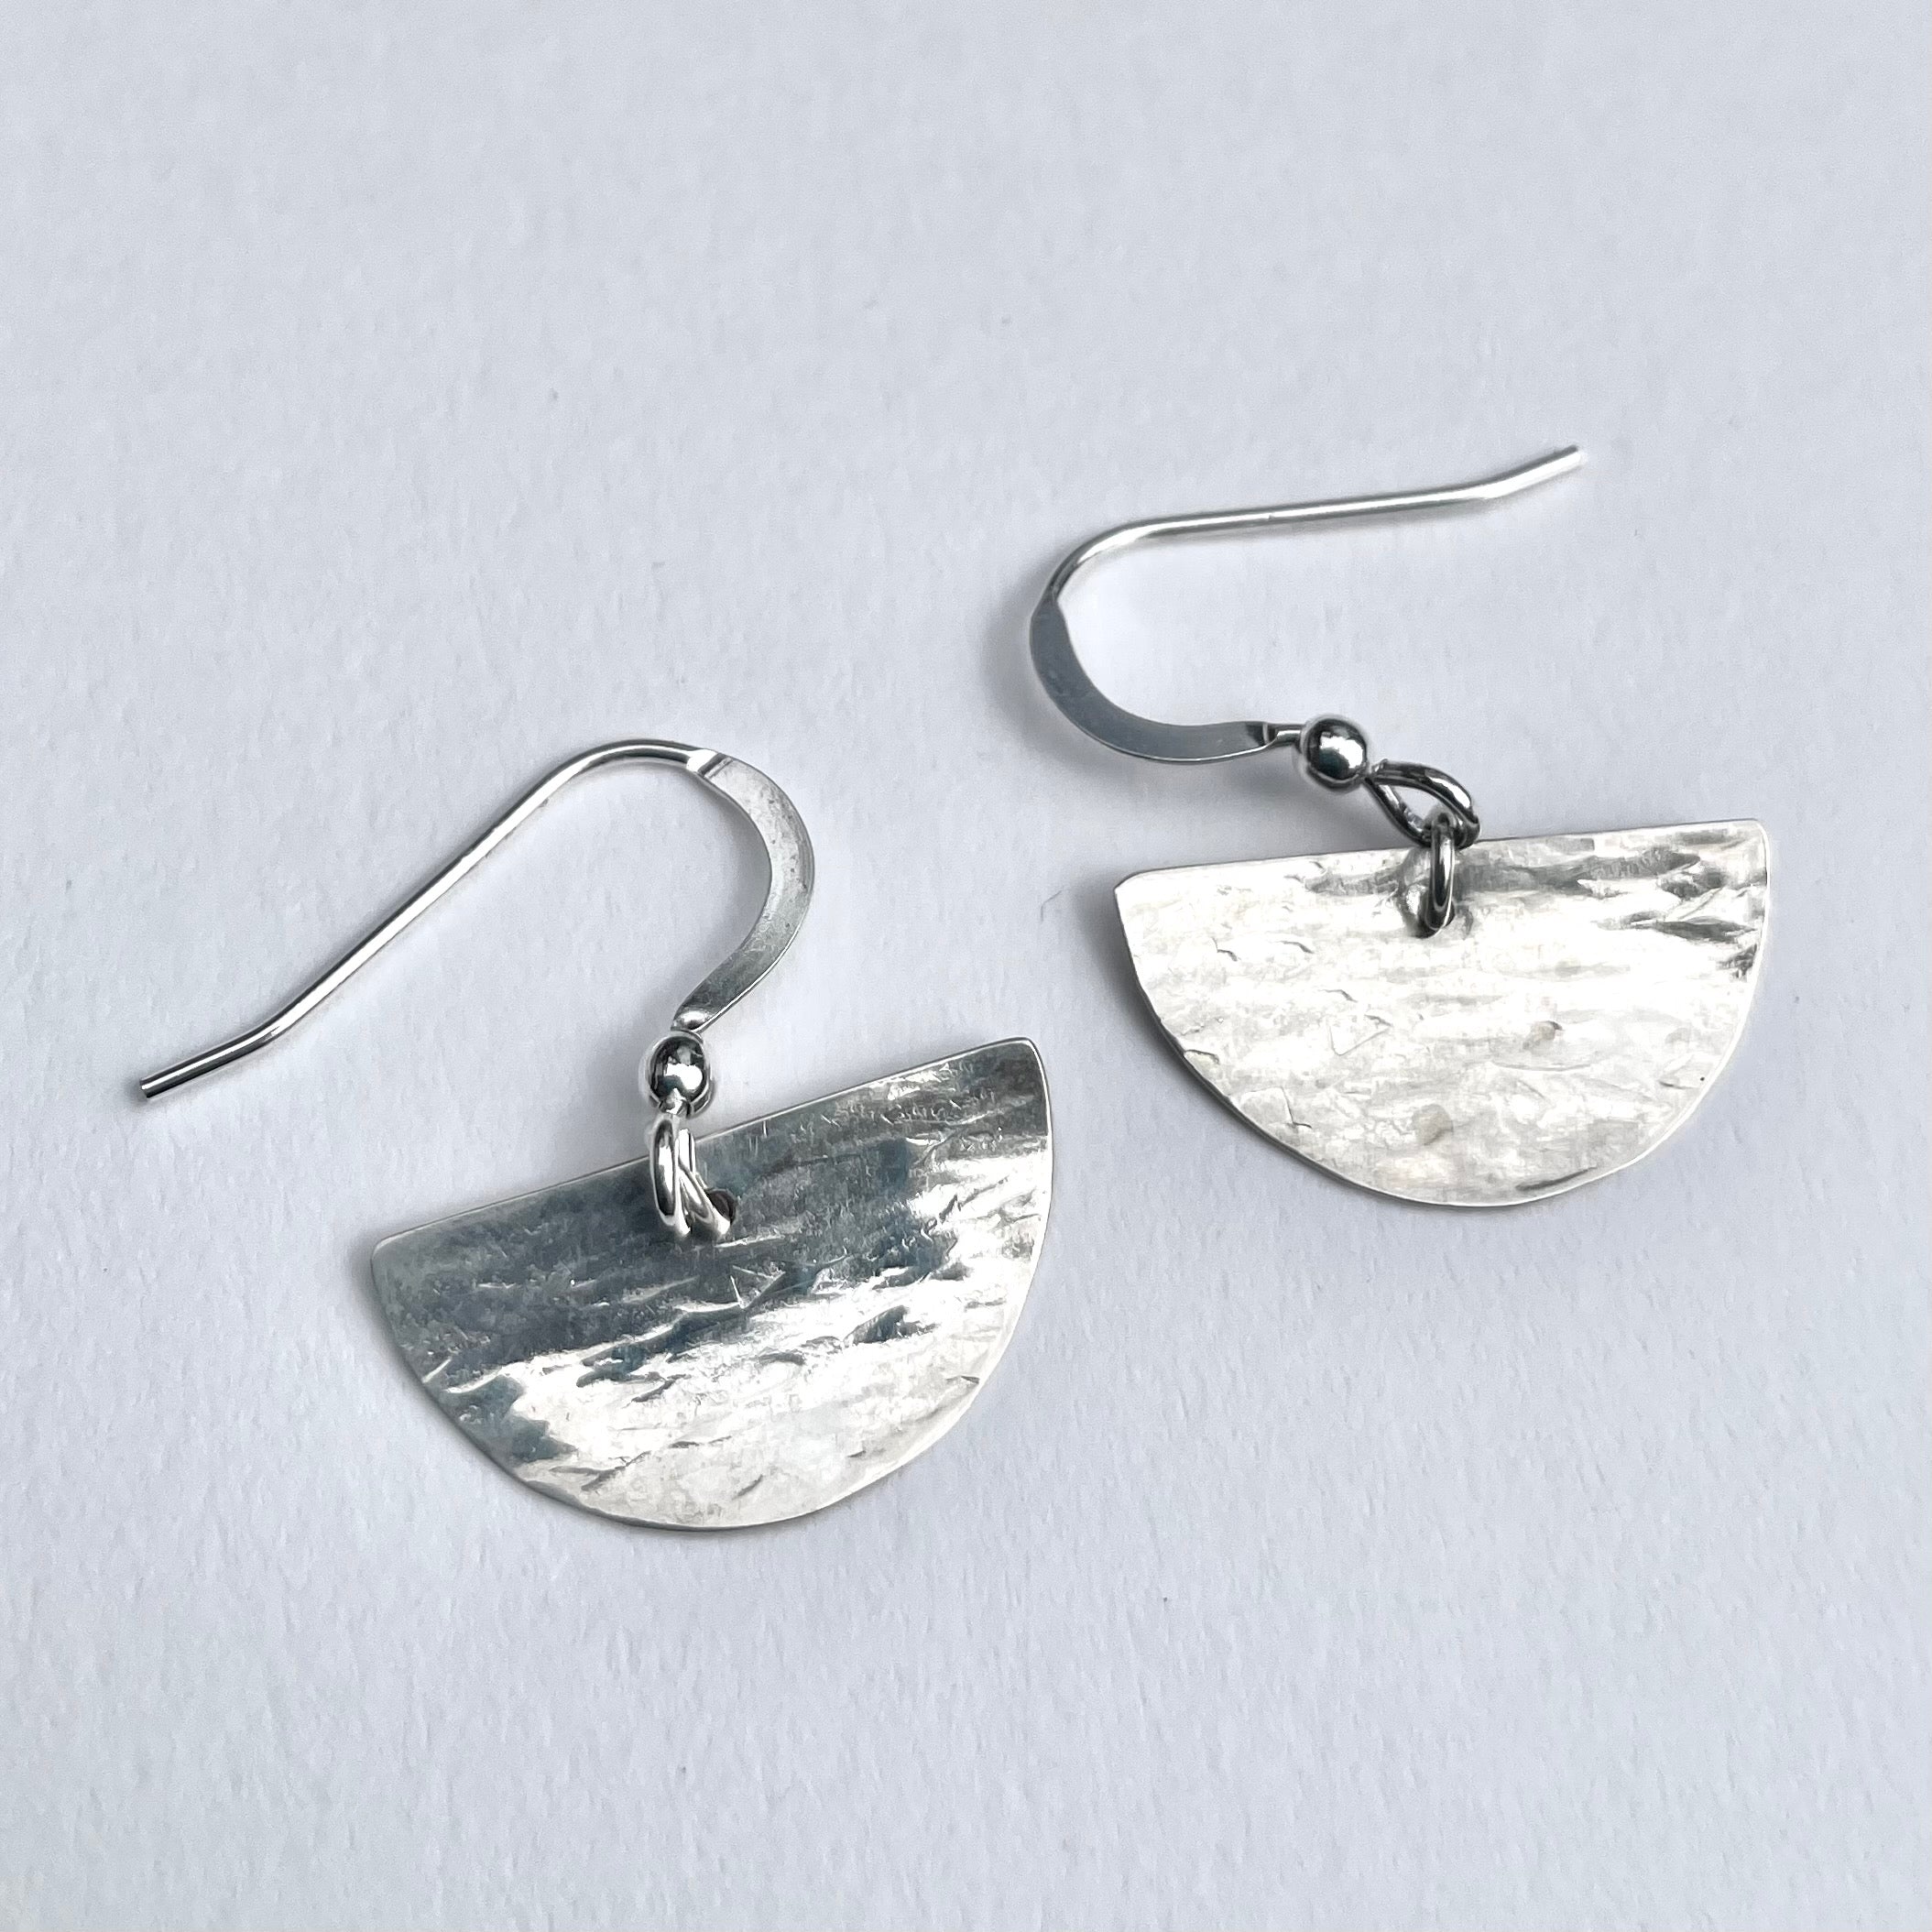 Half moon silver earrings